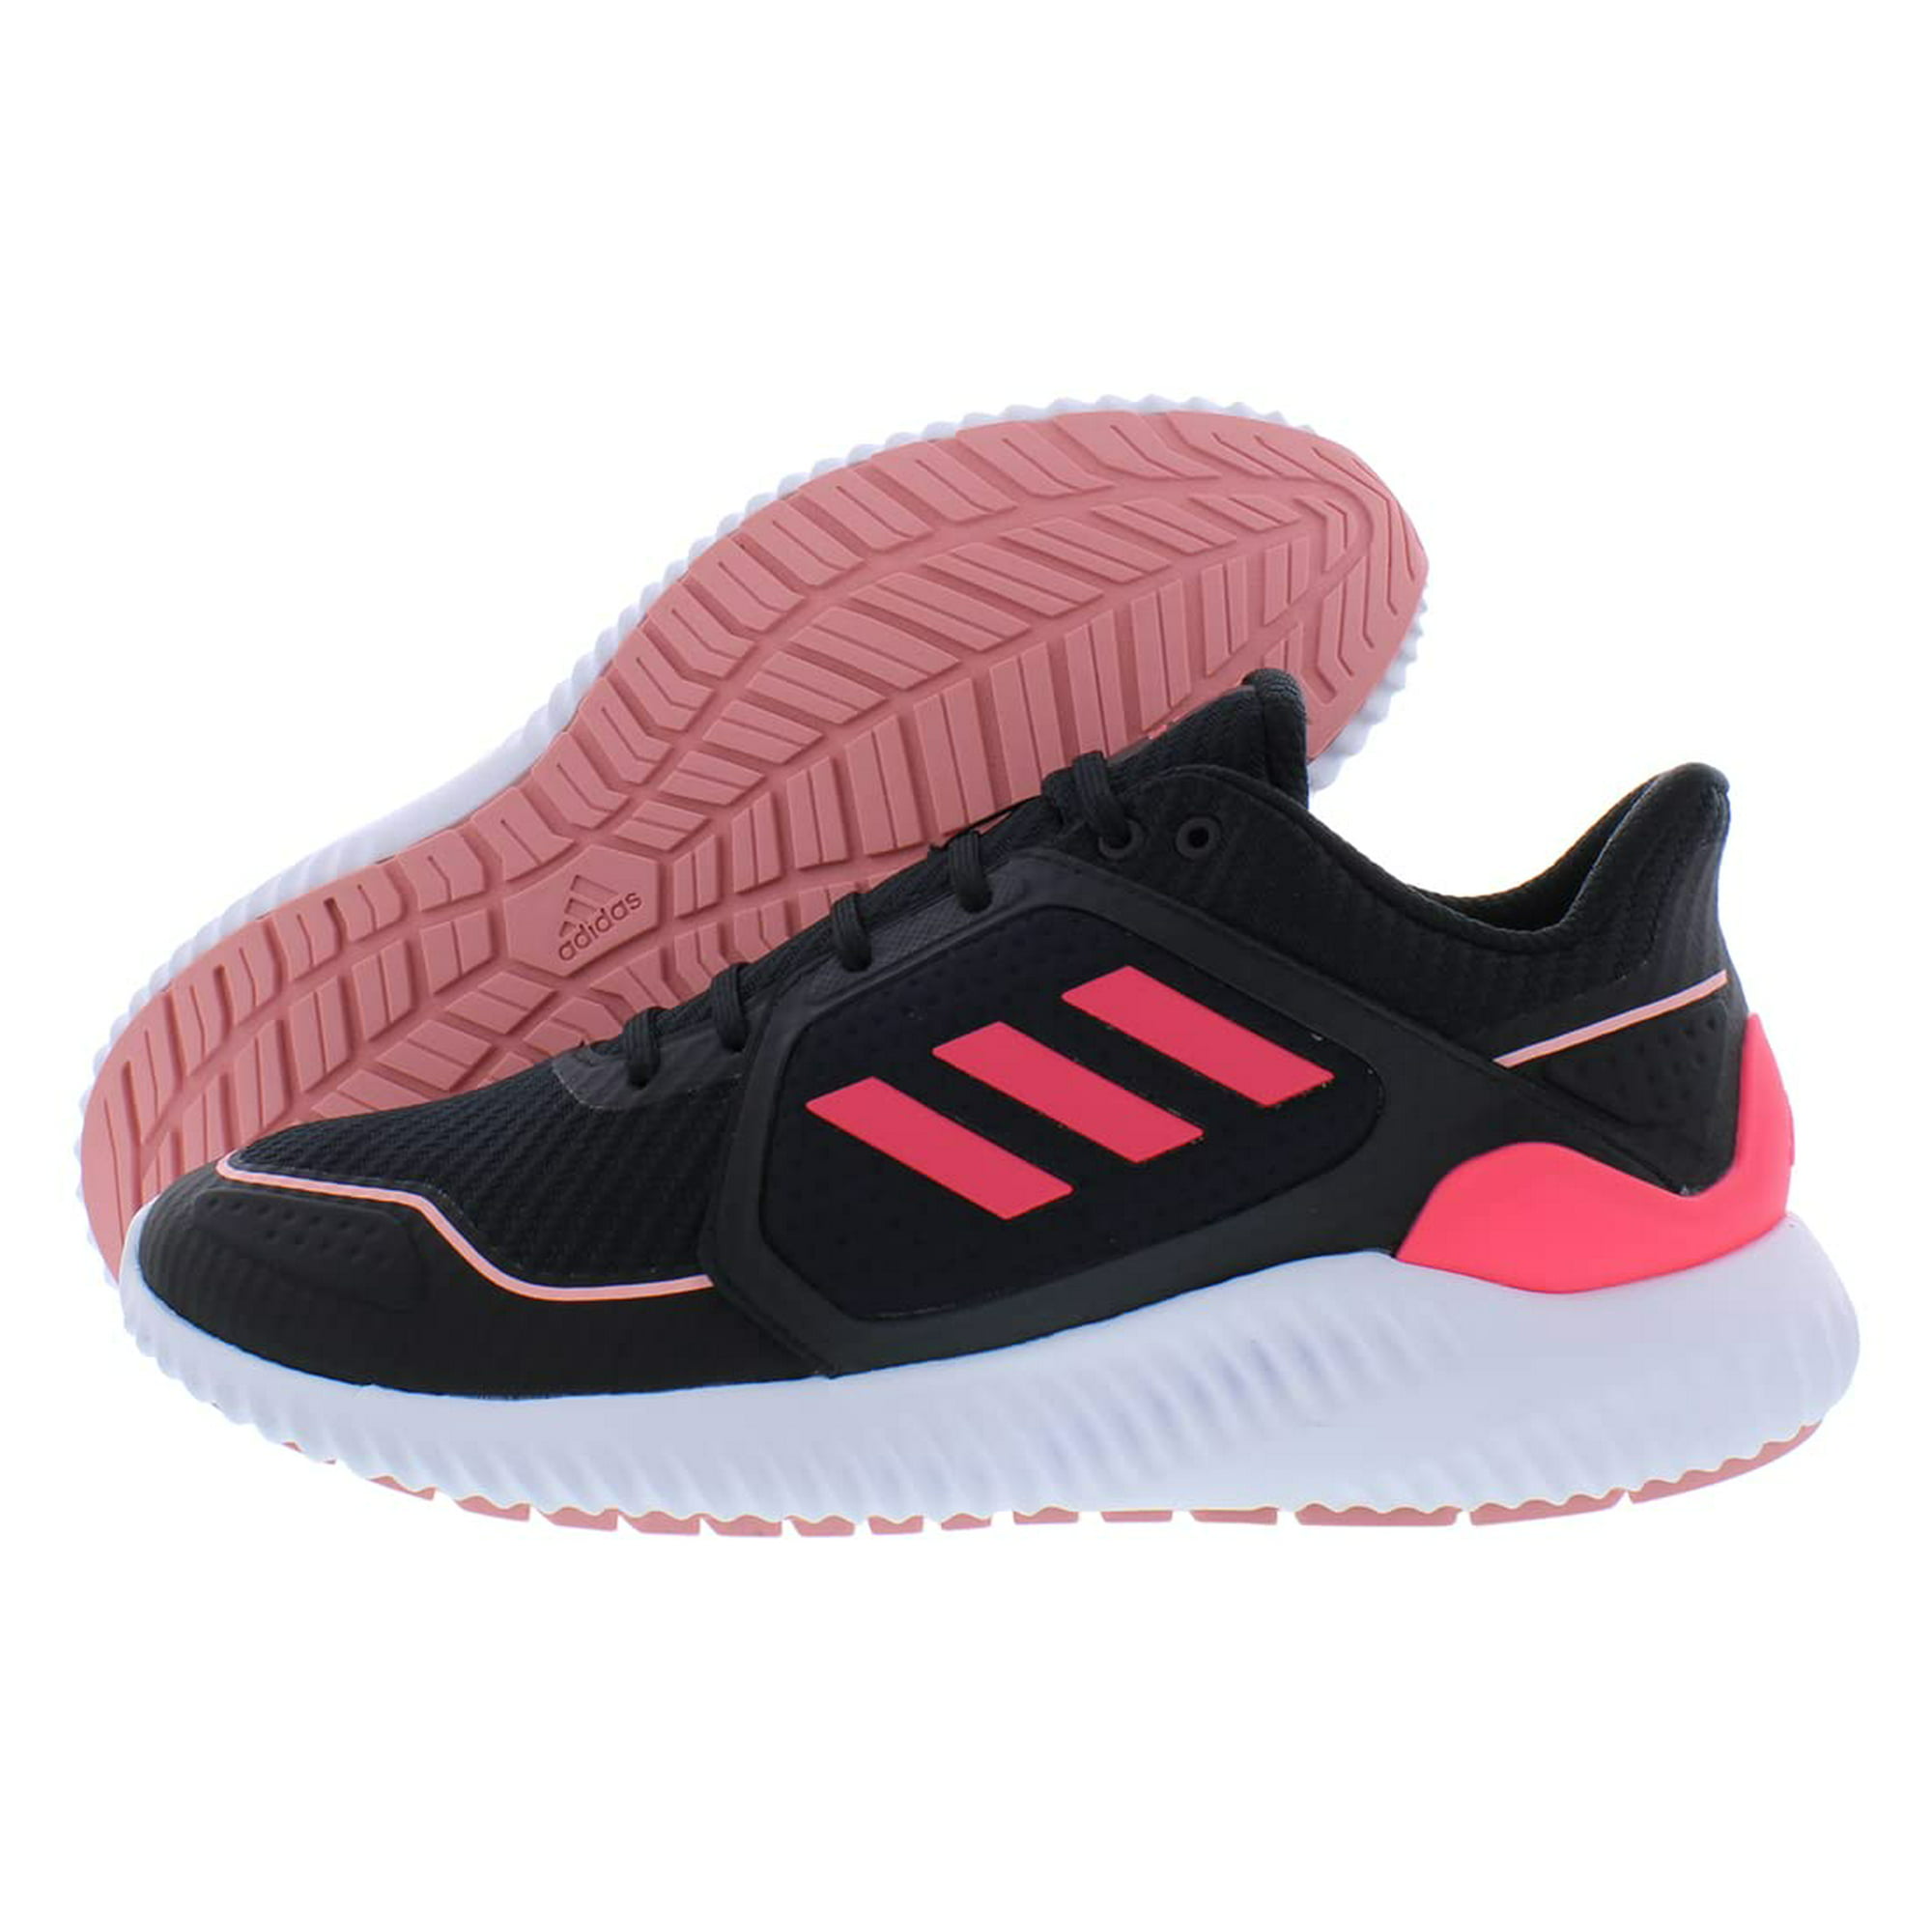 Descortés Andes Casa adidas Climawarm Bounce Unisex Shoes Size 4, Color: Black/Pink | Walmart  Canada